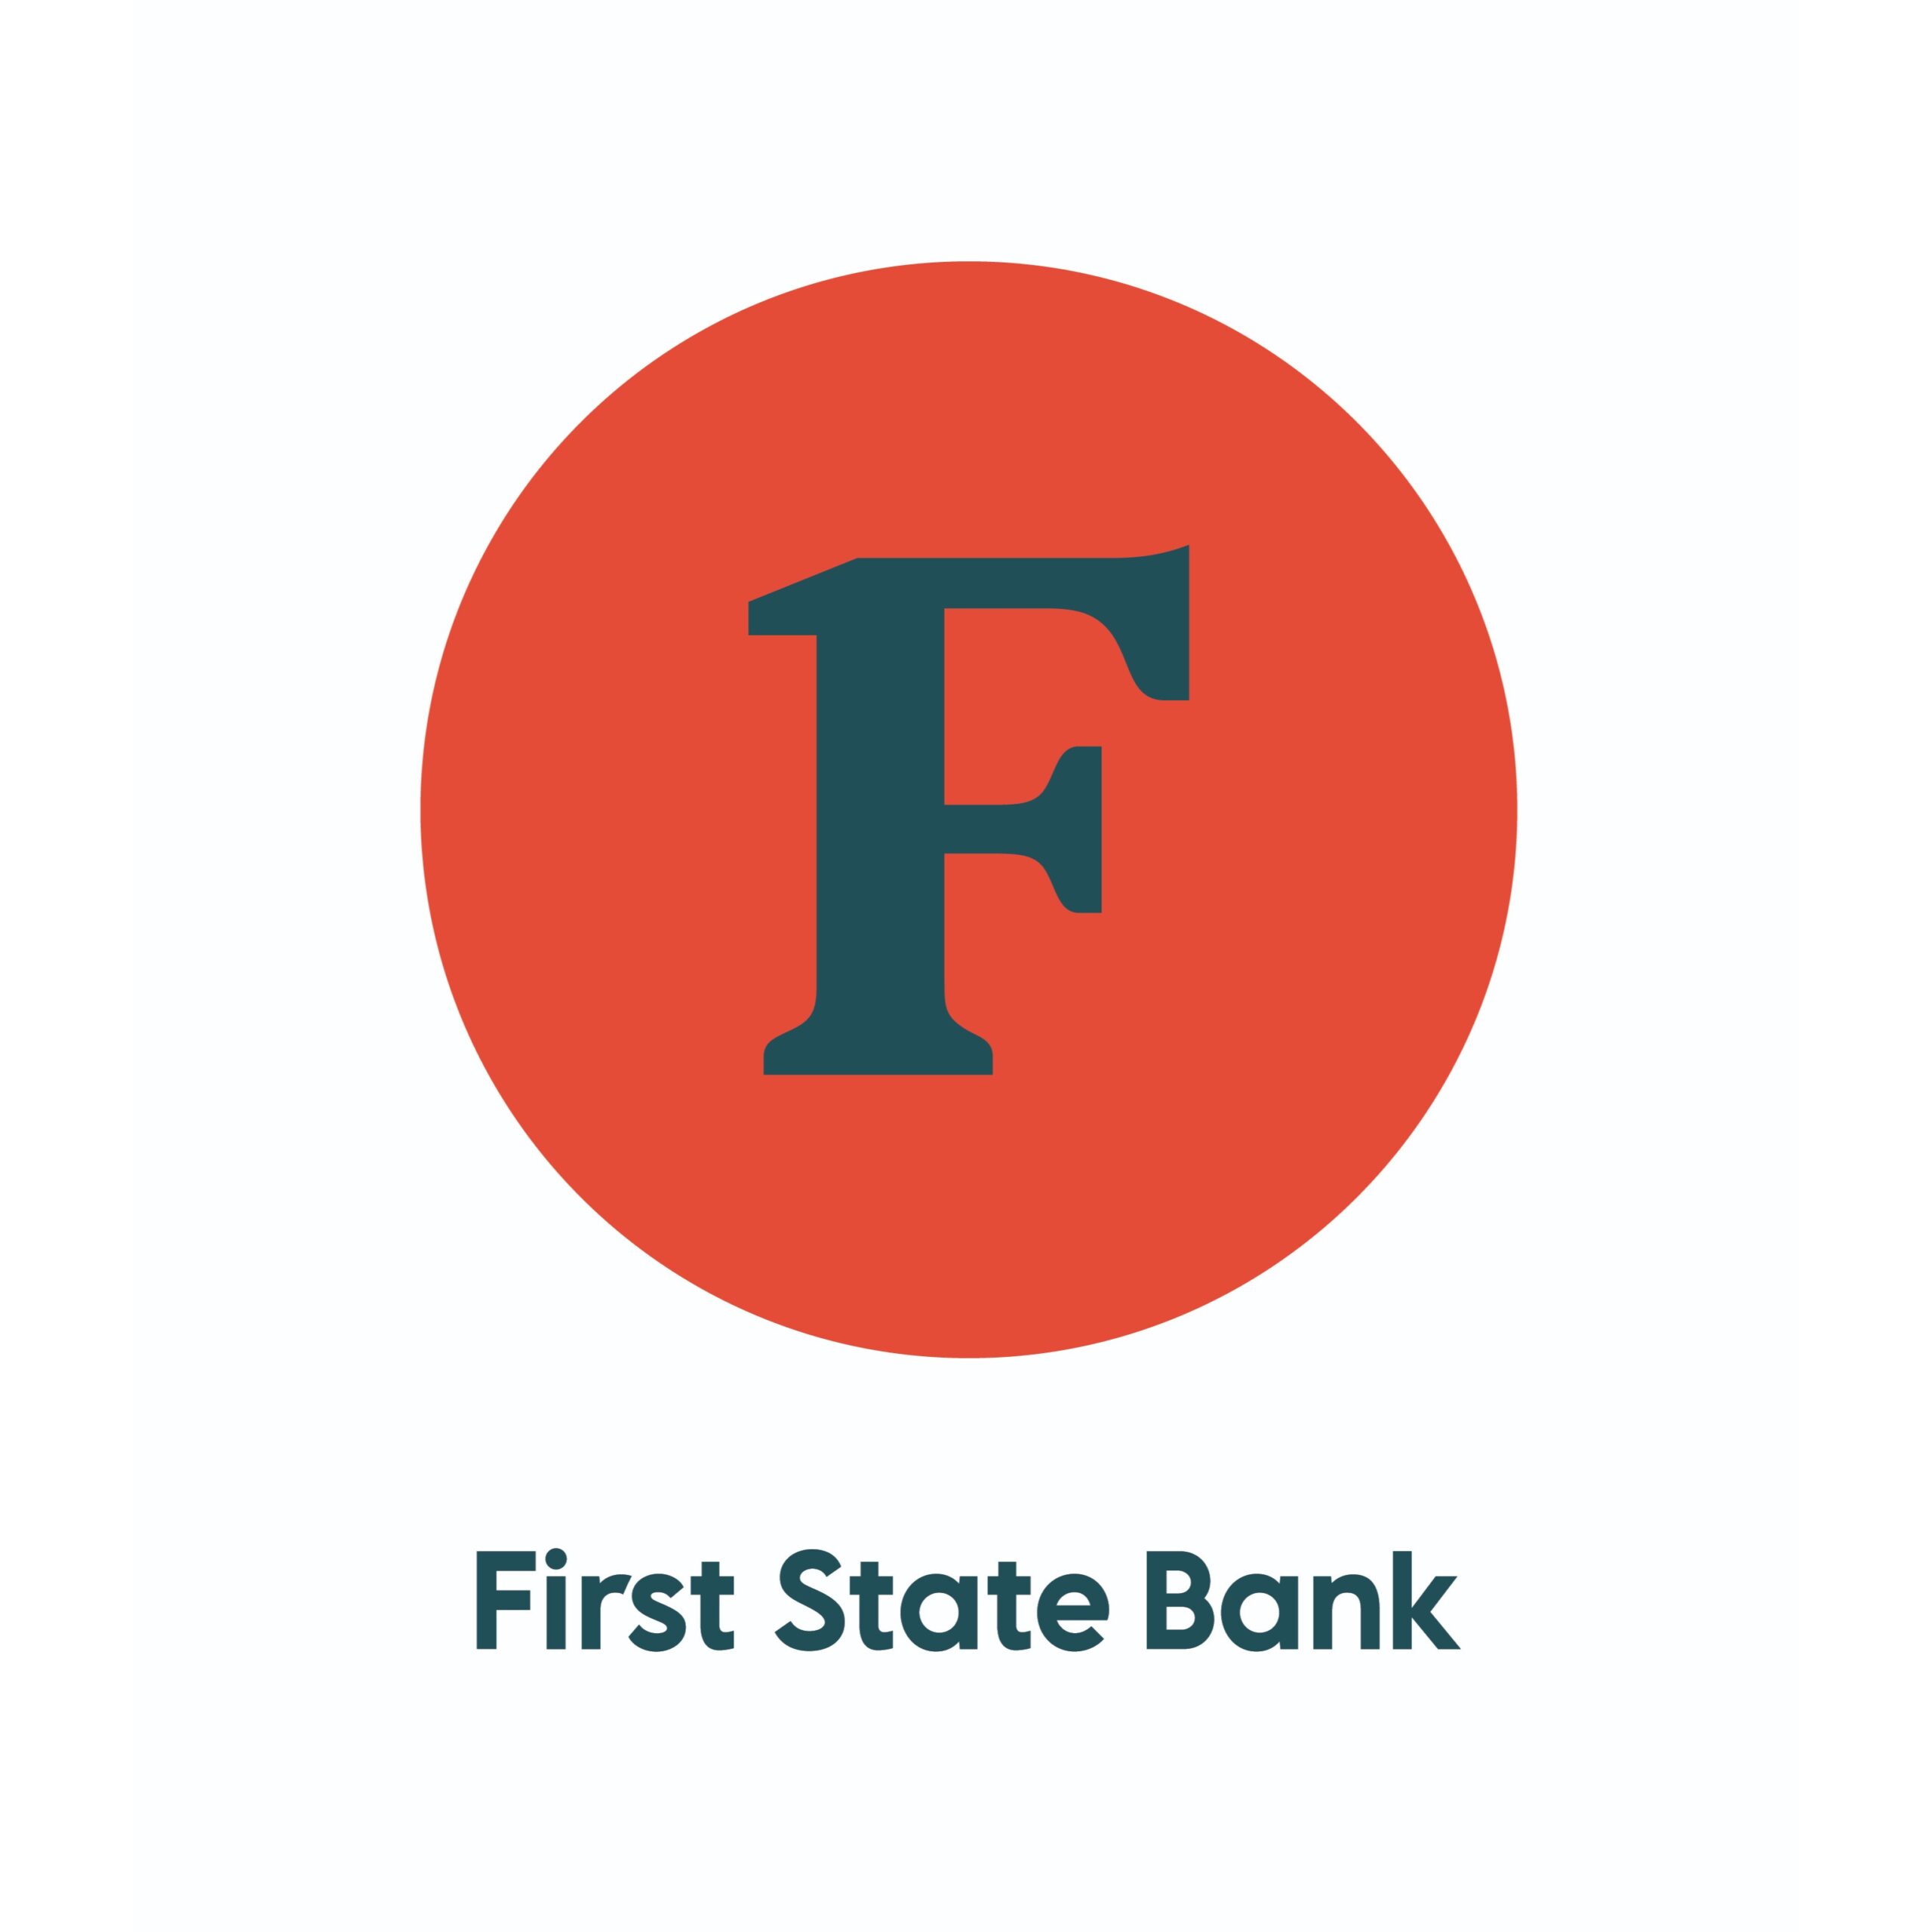 first state bank logo